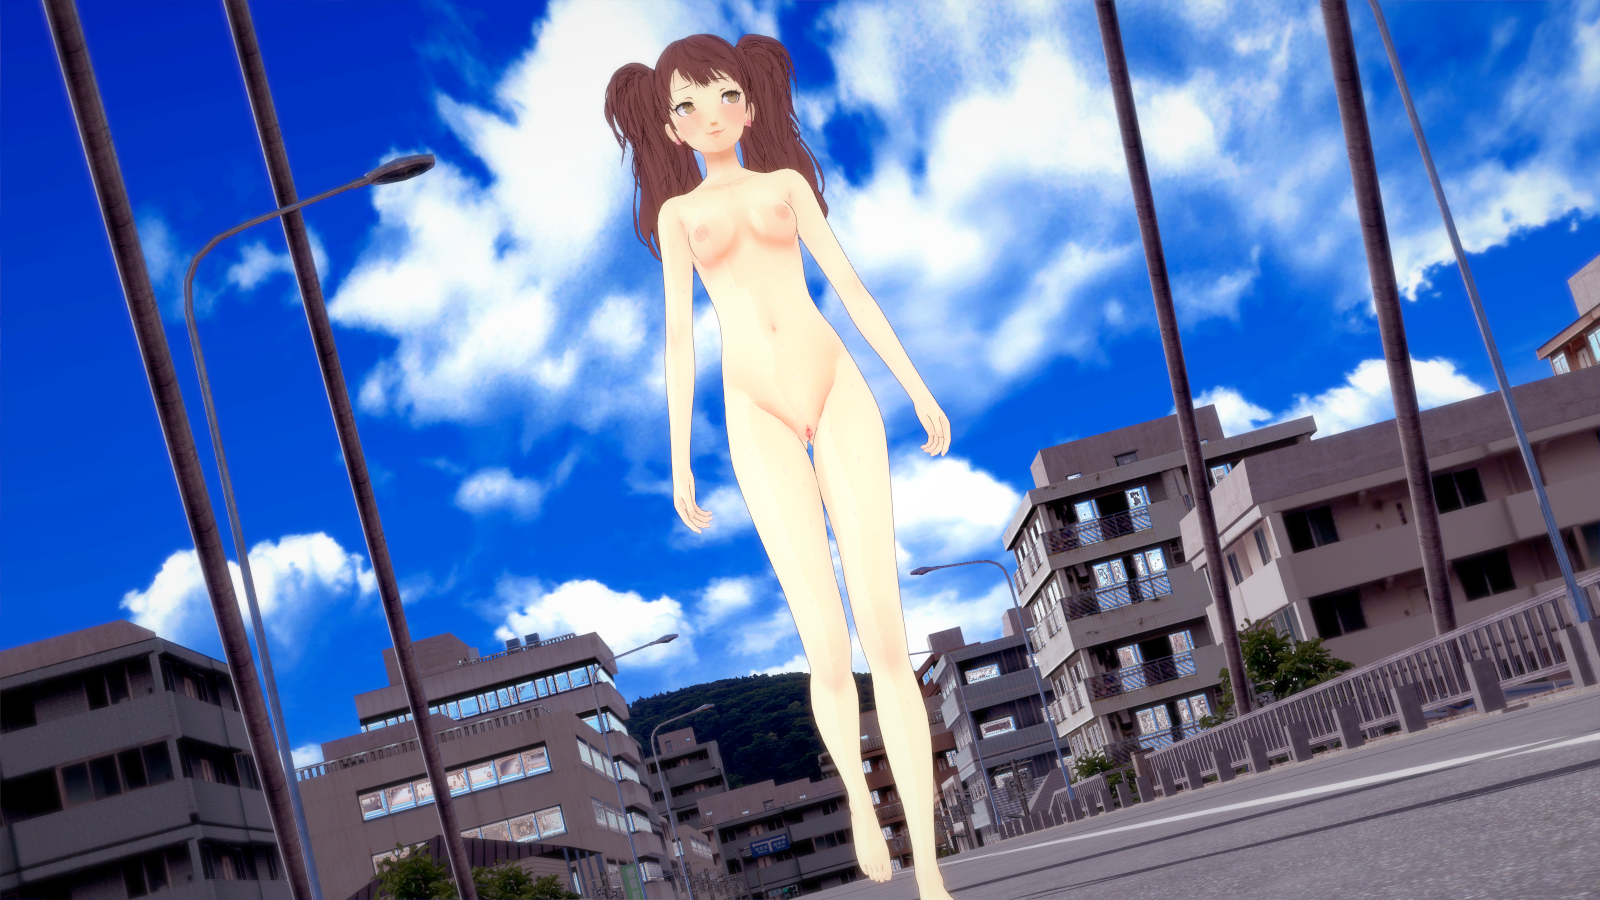 kujikawa rise, megami tensei, persona 4, barefoot, breasts, completely nude...